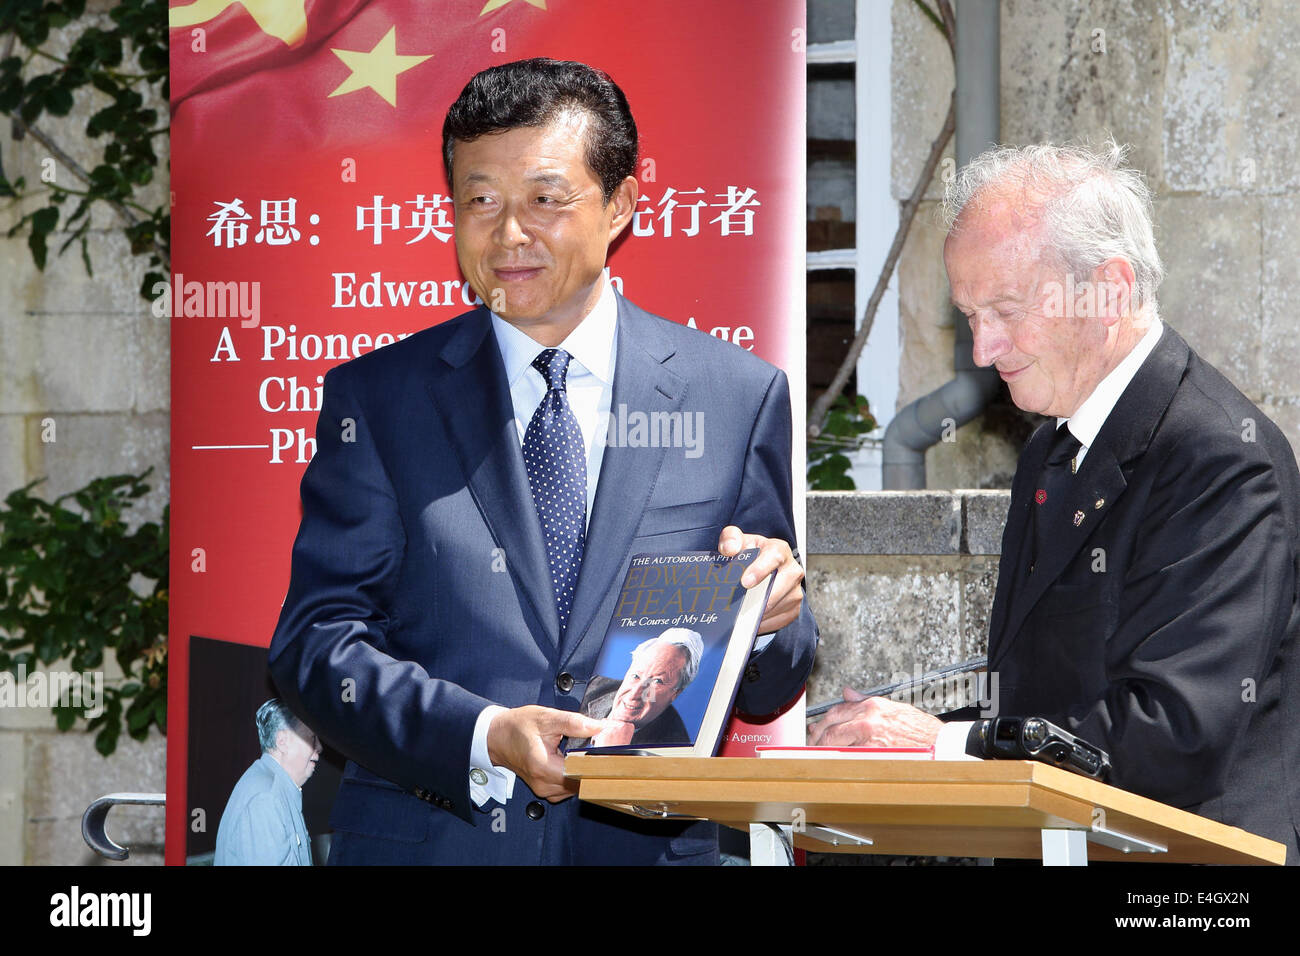 (140711) -- WILTSHIRE, 11 juillet 2014 (Xinhua) -- Robert Armstrong, le chef de Sir Edward Heath Charitable Foundation, présente un livre d'Edward Heath à l'autobiographie de Liu Xiaoming, ambassadeur de Chine en Grande-Bretagne, au cours d'une exposition photographique à la maison de l'ancien Premier ministre britannique Edward Heath, dans le Wiltshire, Angleterre, le 10 juillet 2014. Heath a servi comme premier ministre de la Grande-Bretagne à partir de juin 1970 à février 1974. Au cours de son mandat, la Grande-Bretagne a établi des relations diplomatiques avec la Chine en 1972. Il a rendu plusieurs visites en Chine pendant et après son mandat. (Xinhua/Xu Hui) Banque D'Images